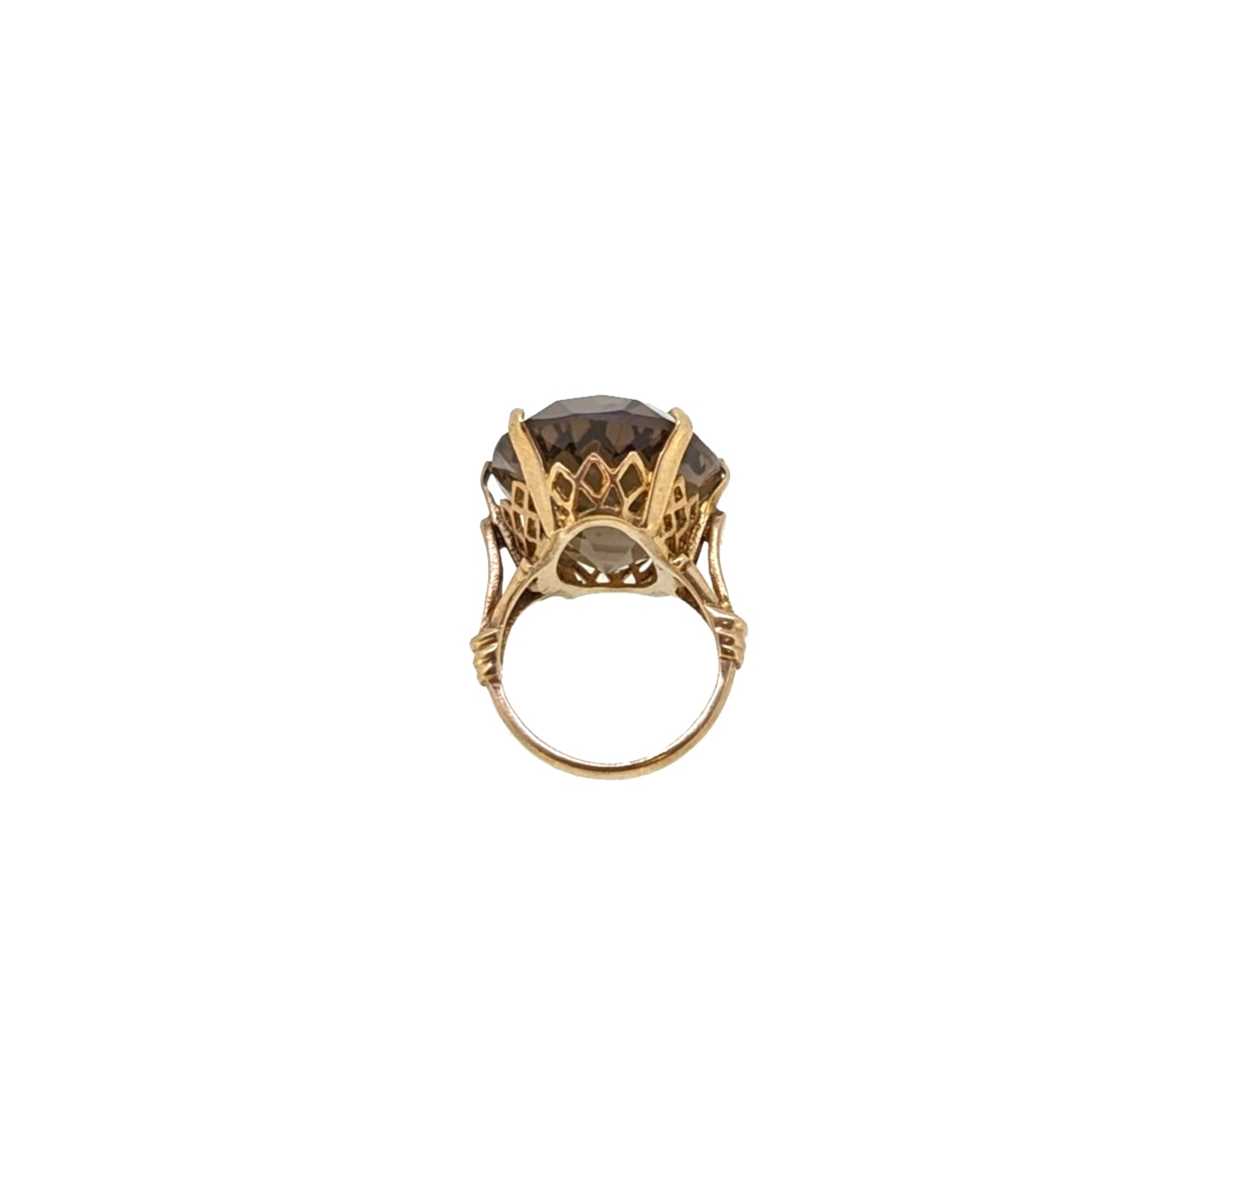 A smoky quartz dress ring, - Image 3 of 4